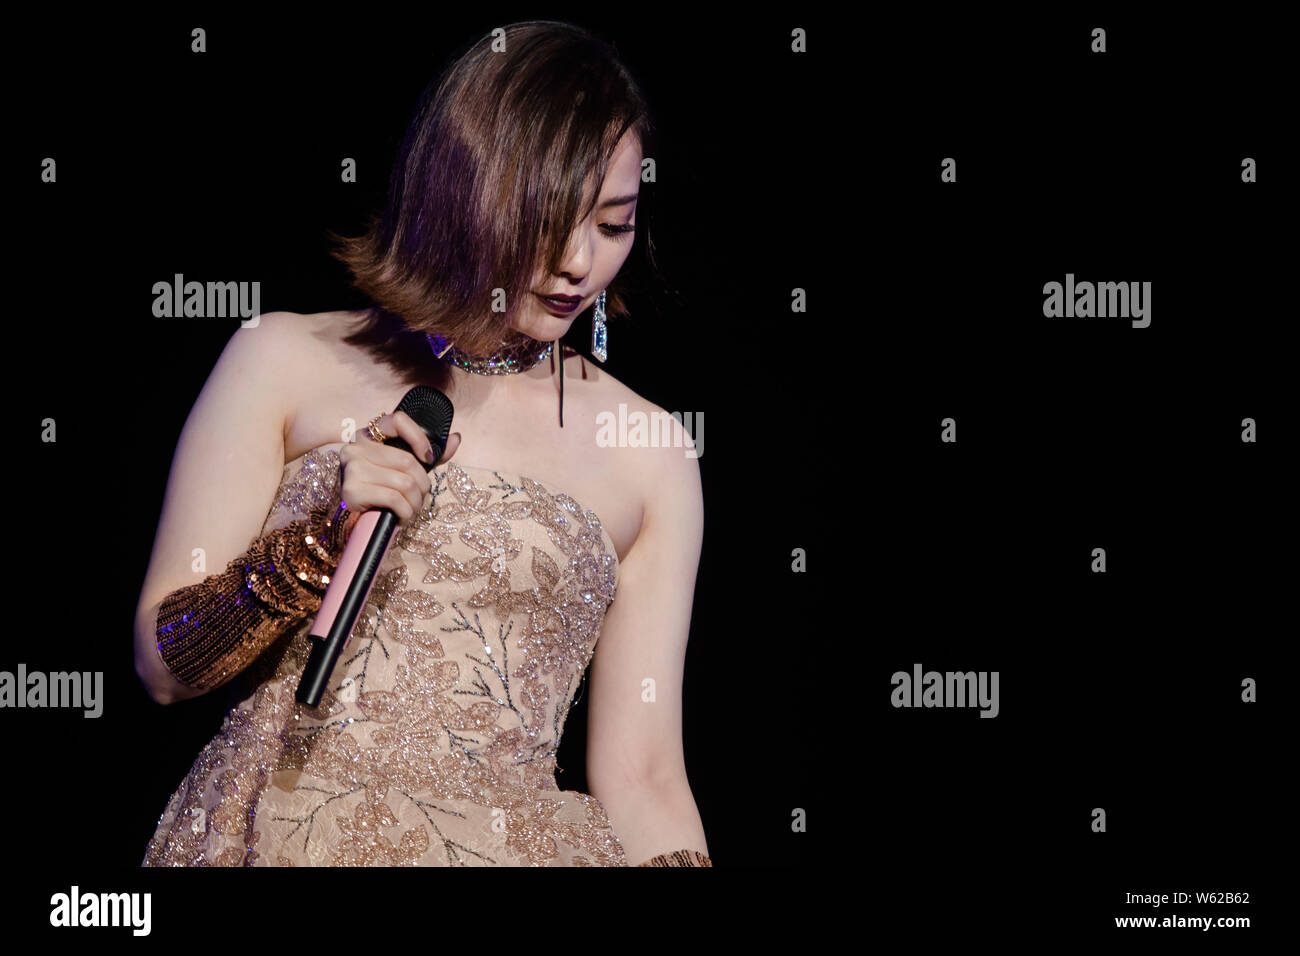 Cantante cinese Zhang Liangying, meglio noto come Jane Zhang, si esibisce in concerto durante il suo "Jane's Secret " world tour nella città di Nanjing, Cina orientale" Foto Stock